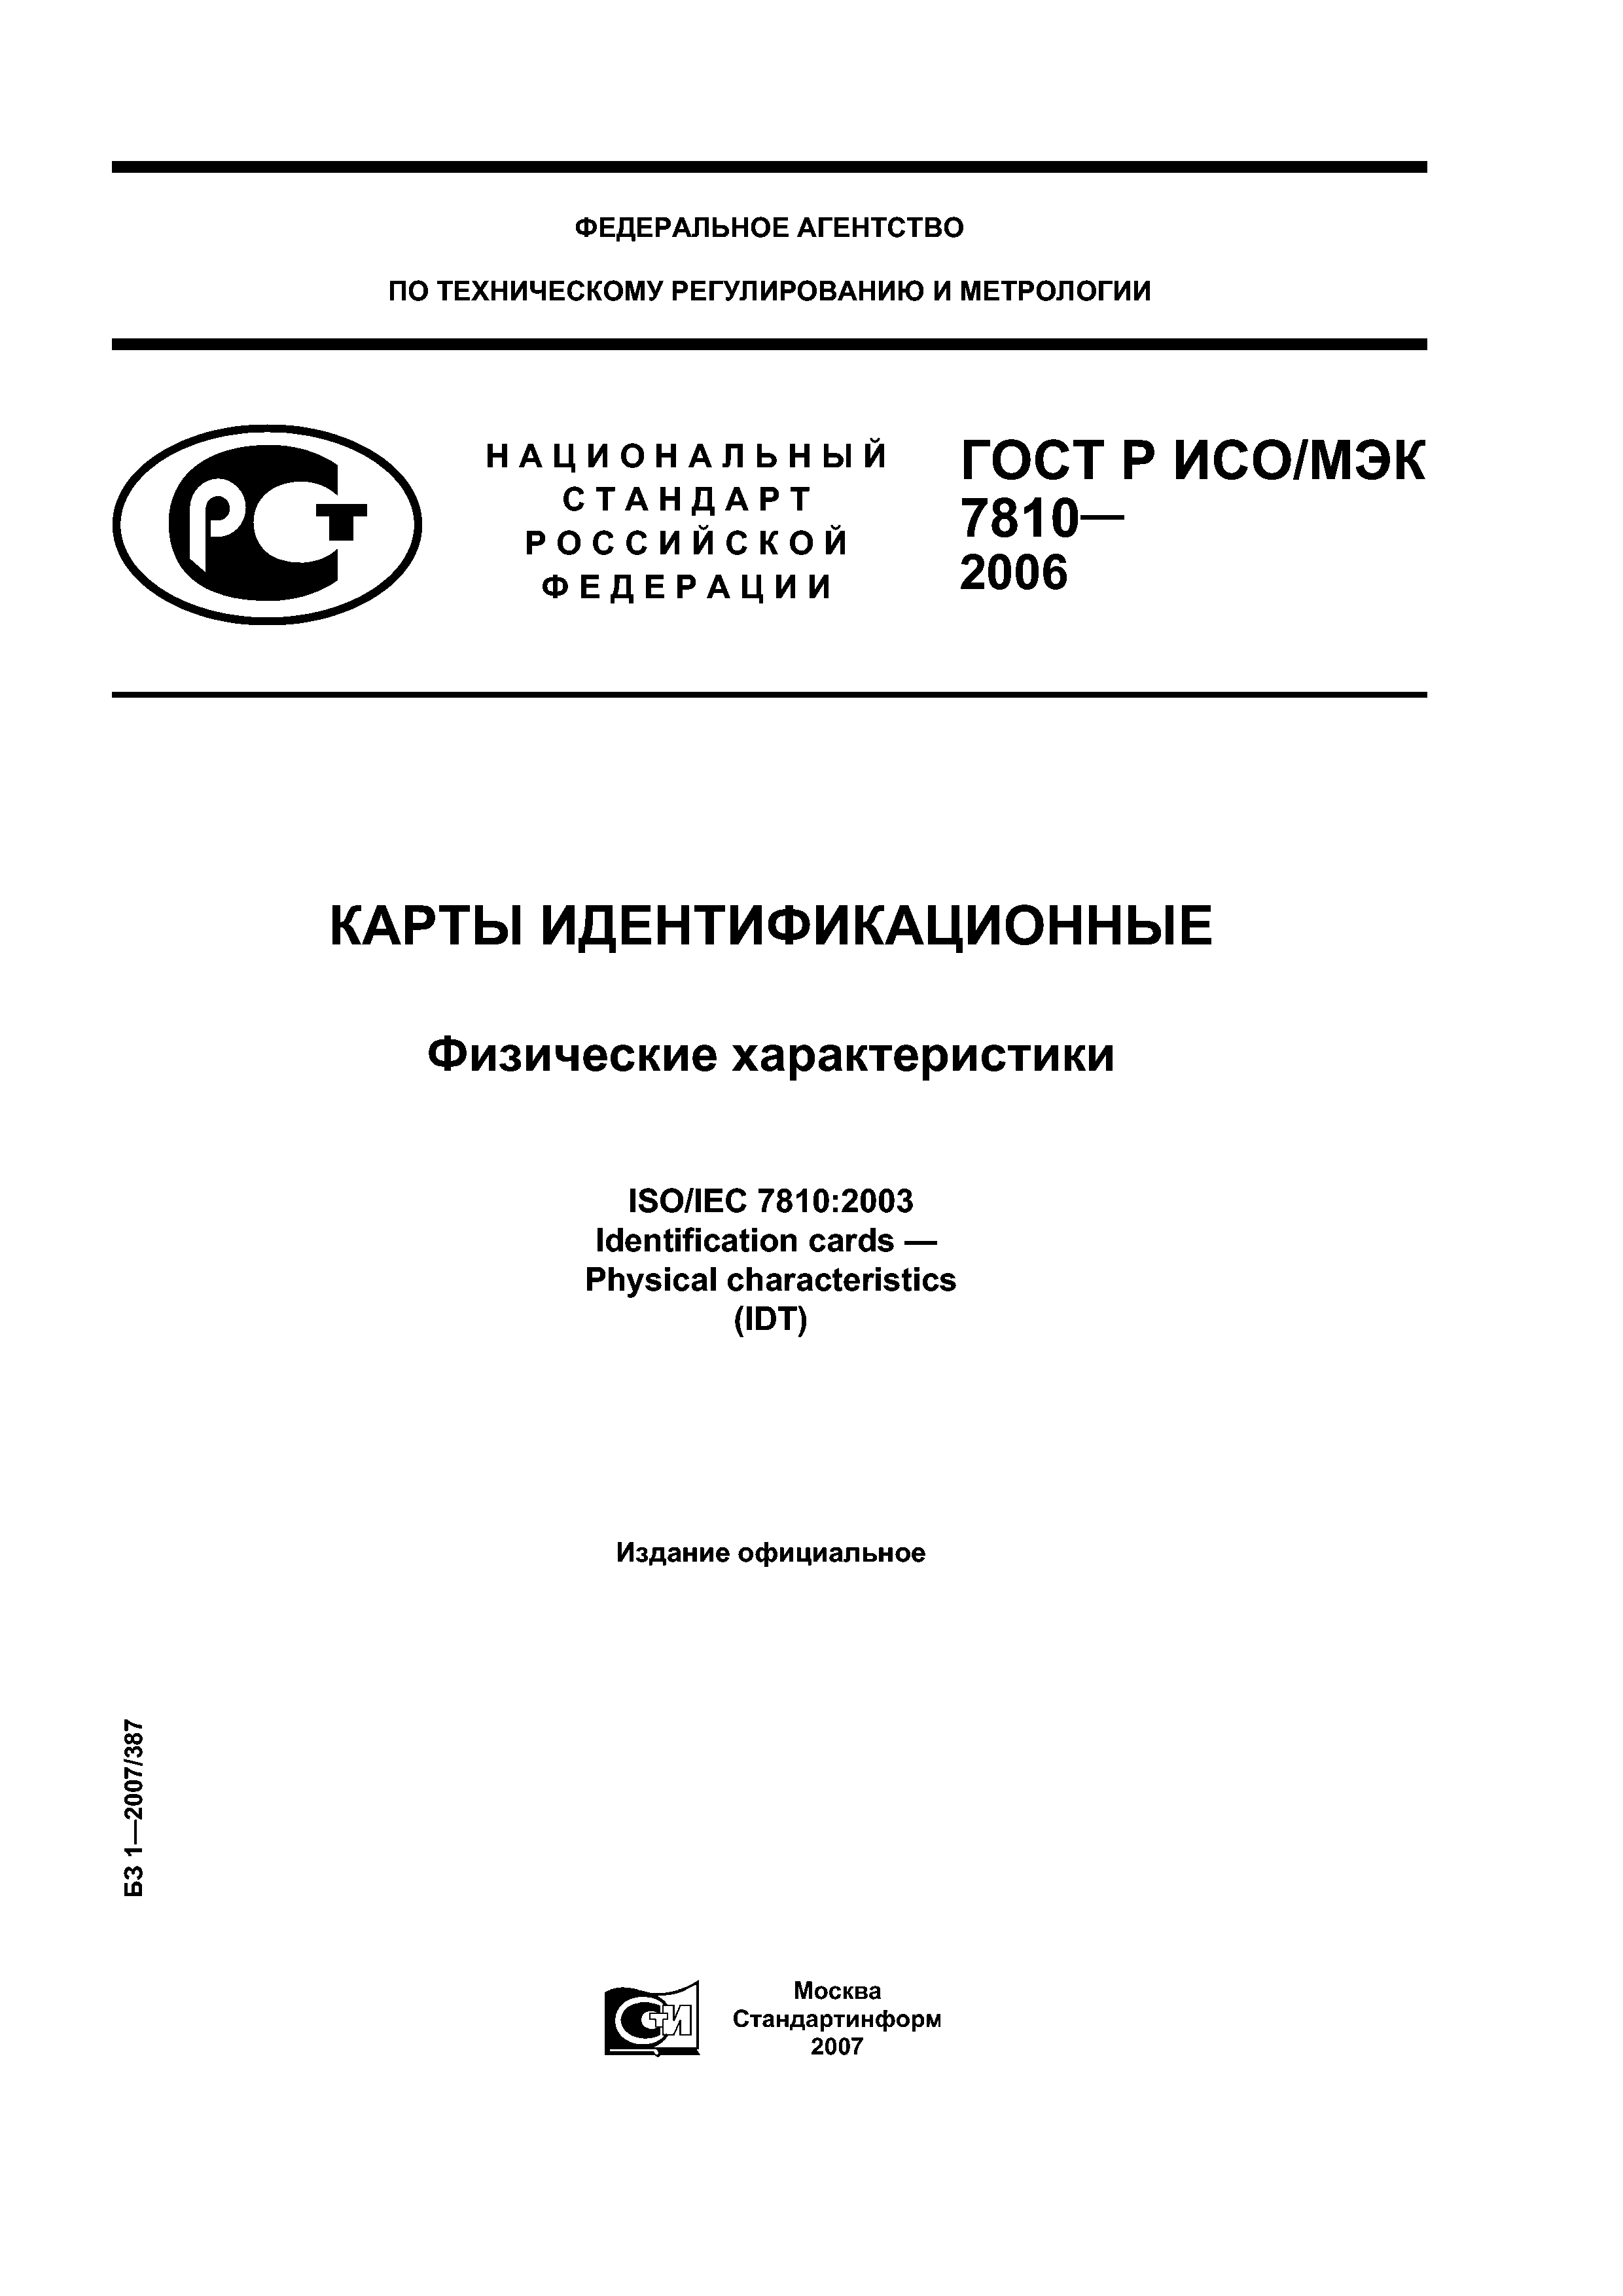 ГОСТ Р ИСО/МЭК 7810-2006